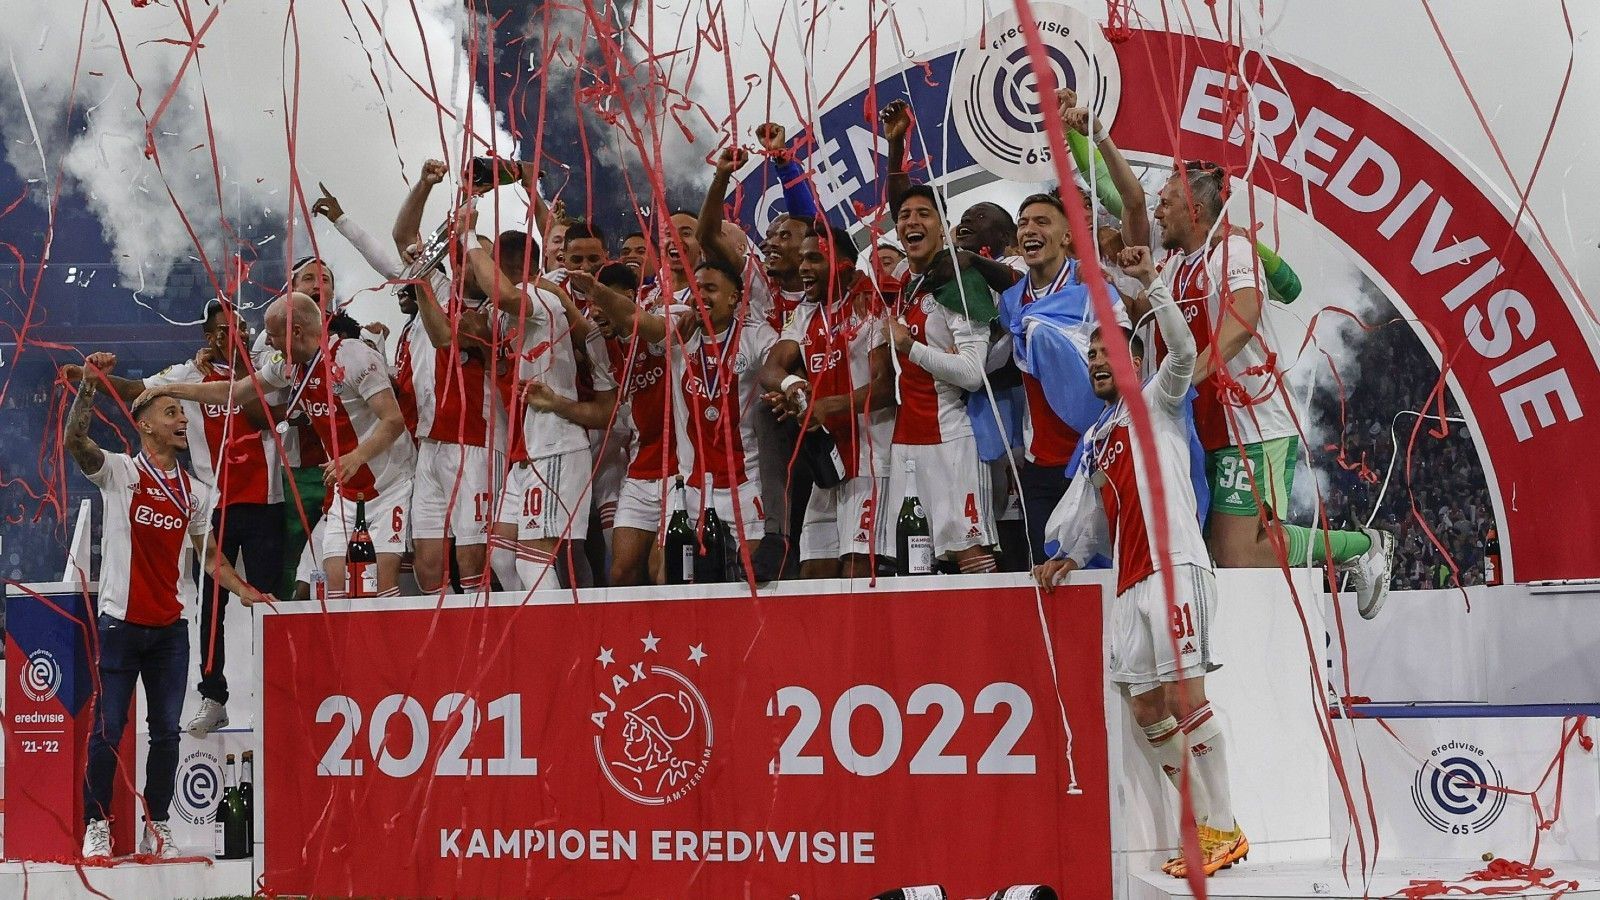 
                <strong>Eredivisie: Ajax verteidigt seinen Meistertitel</strong><br>
                Ajax Amsterdam hat in der niederländischen Eredivisie seinen Titel verteidigt. Die Mannschaft des zukünftigen United-Trainers Erik ten Hag ist nach einem souveränen 5:0-Sieg gegen den SC Heerenveen einen Spieltag vor Saisonende nicht mehr von der Tabellenspitze zu verdrängen. PSV Eindhoven mit Mario Götze bleibt nach einem lange spannenden Titelkampf nur Platz zwei. Für Ajax ist es der 36. Meistertitel der Liga-Geschichte.
              